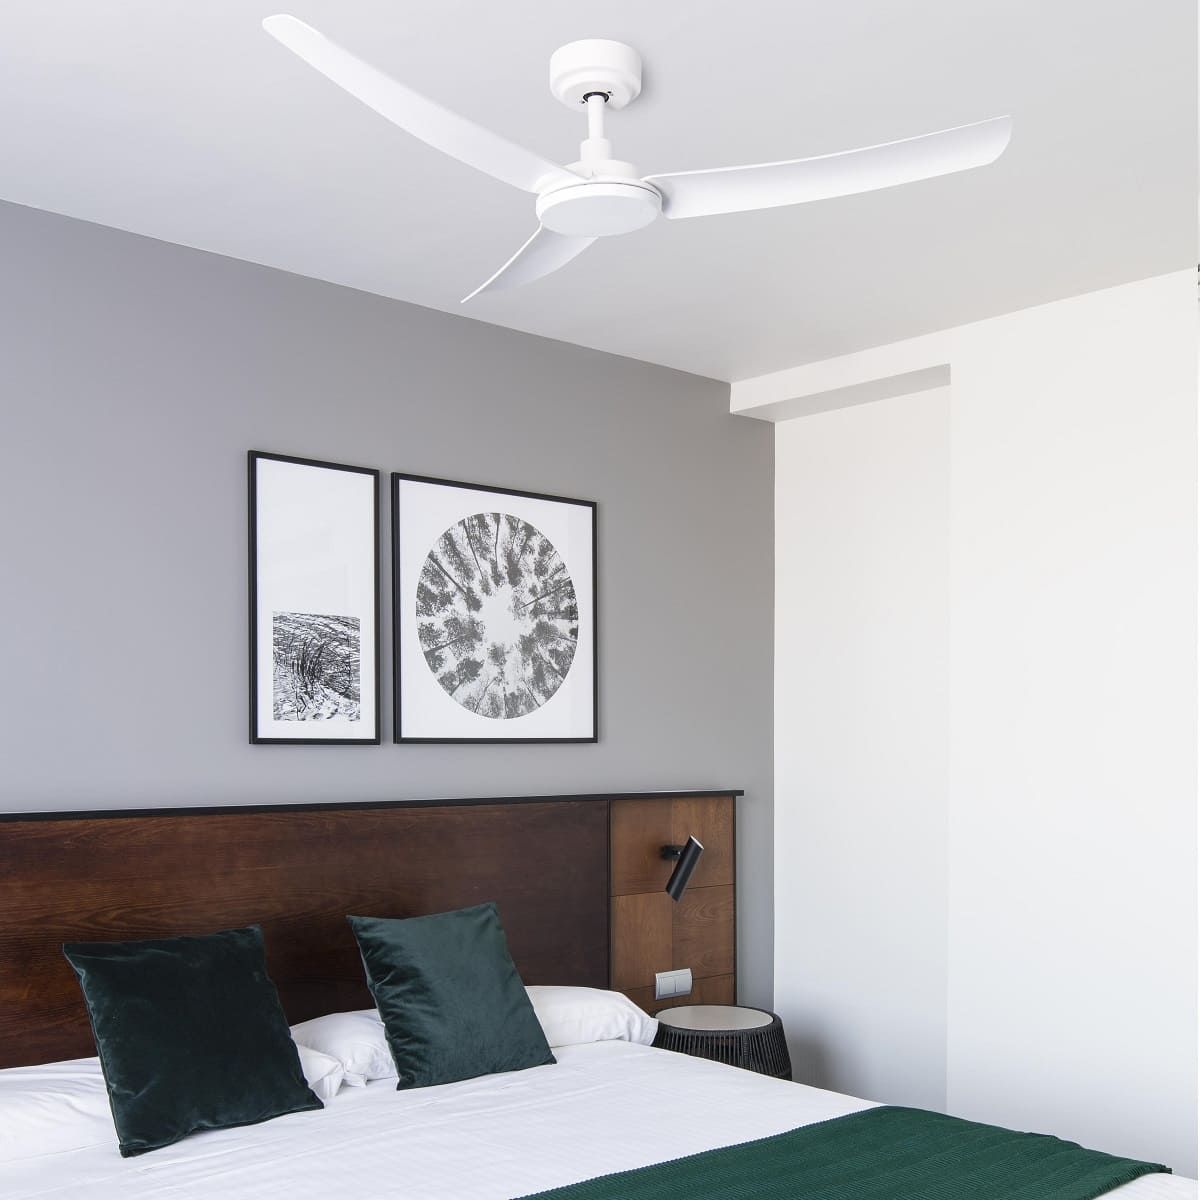 Los ventiladores de techo son ideales para dormir ya que proporcionan una relajante brisa